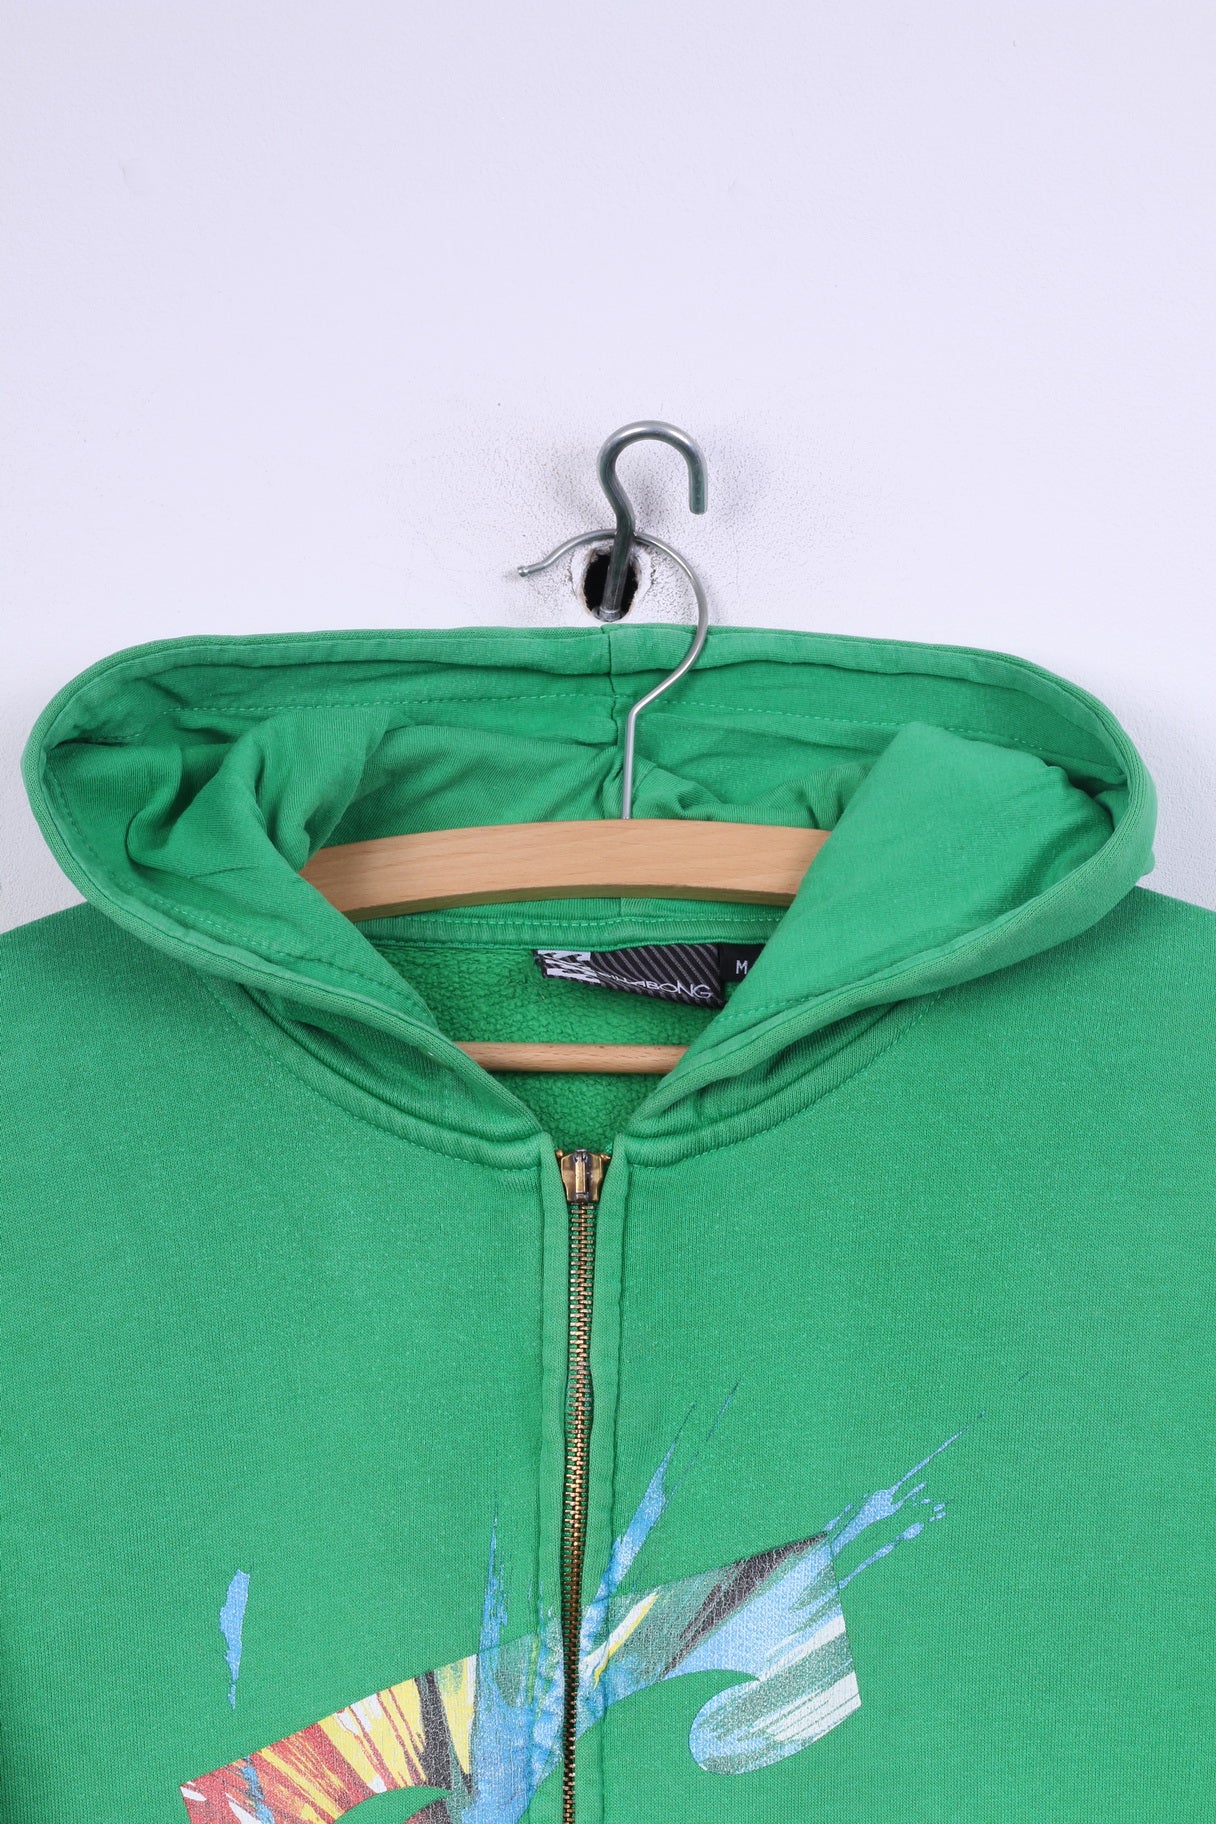 Billabong Mens M Sweatshirt Green Hooded Cotton Jumper Full Zipper